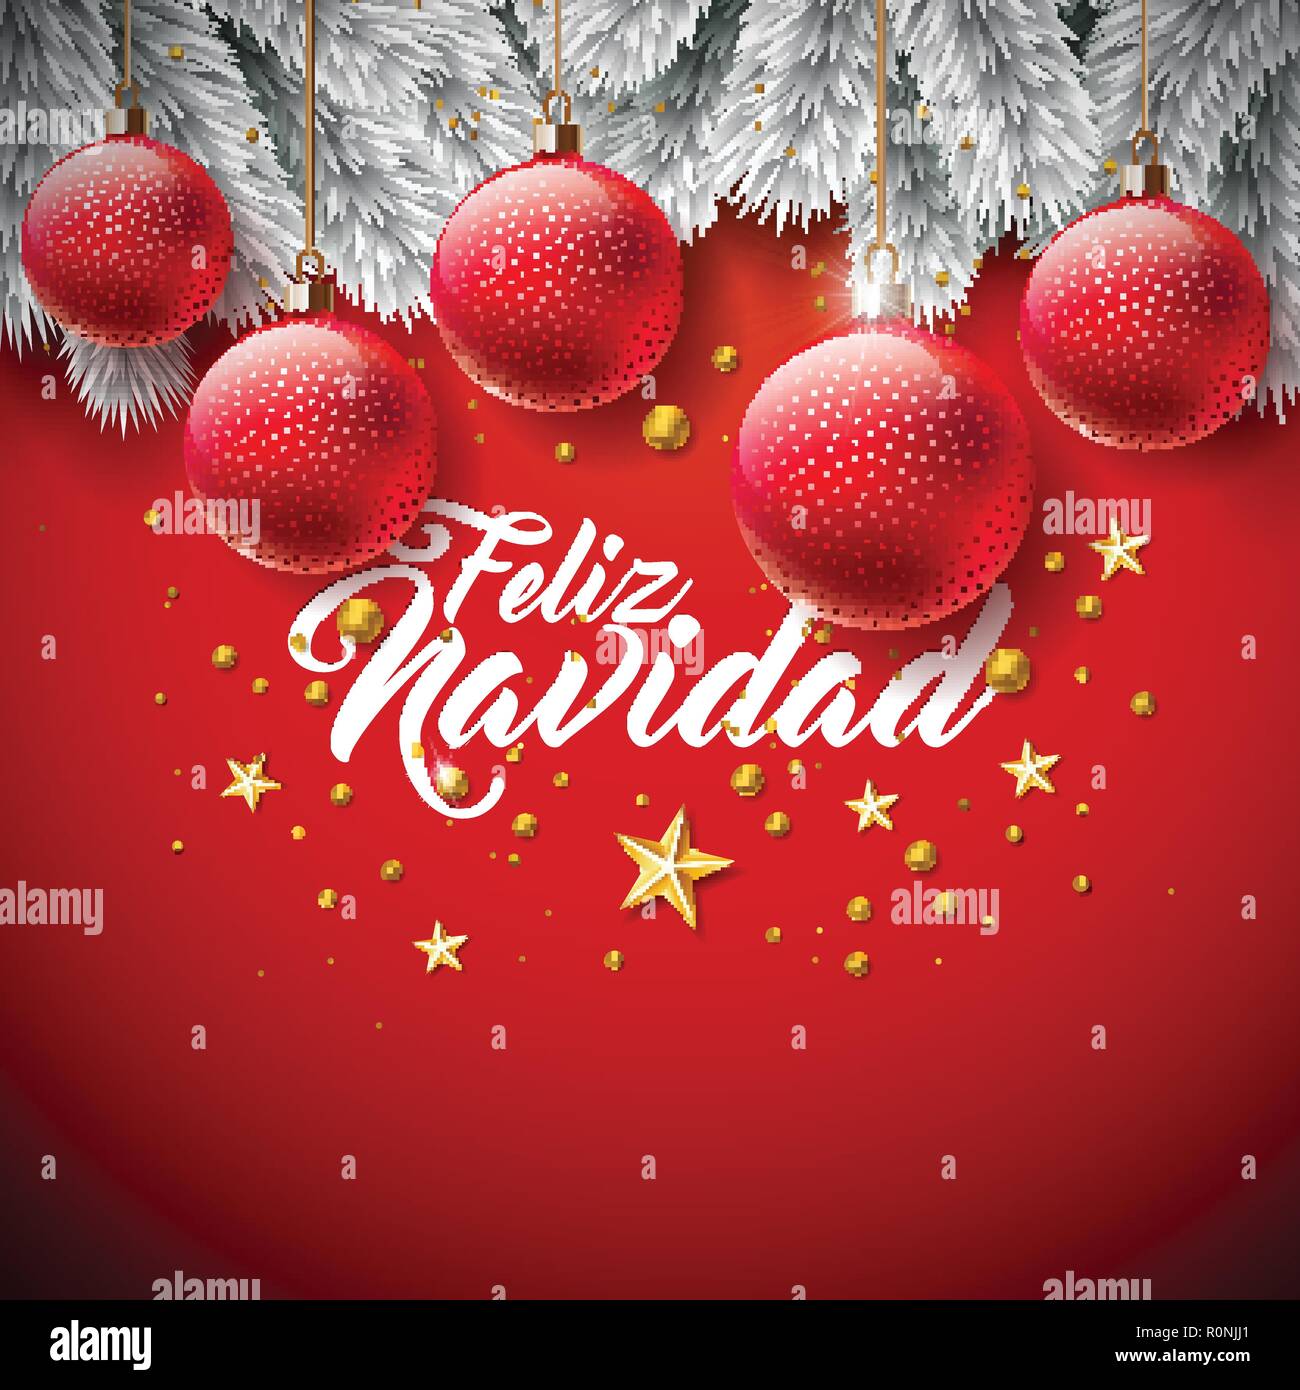 Vector Illustration De Noel Avec L Espagnol Feliz Navidad Typographie Sur Fond Rouge Maison De Bille